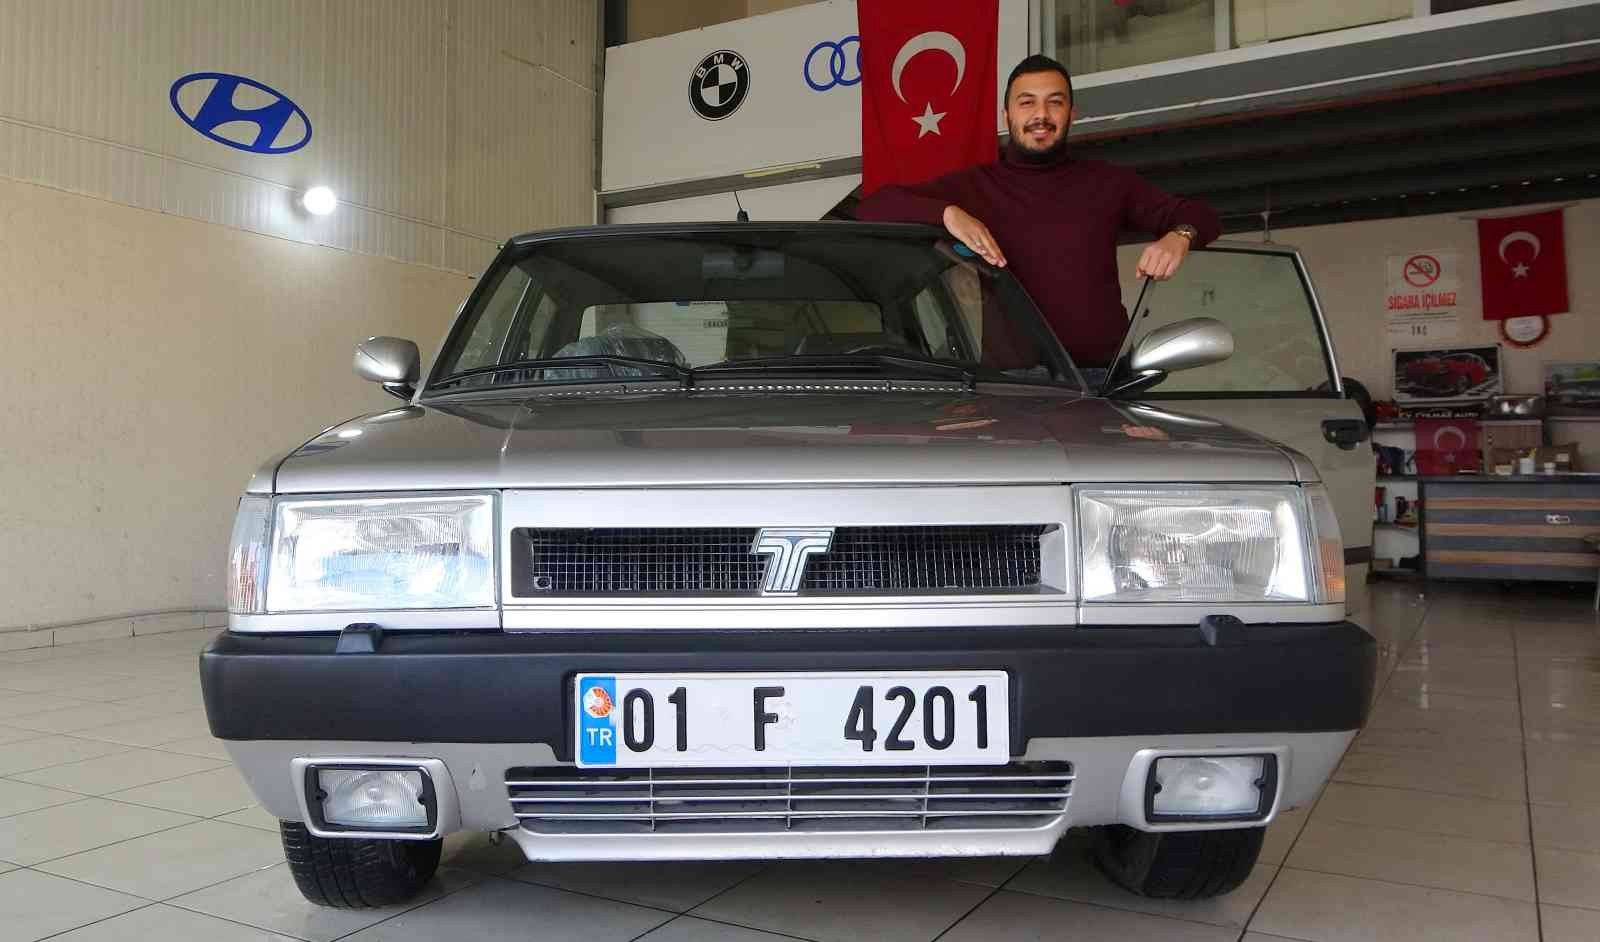 Türkiye’de nadir araçlardan dediği otomobilini 145 bin liradan satışa çıkardı #osmaniye